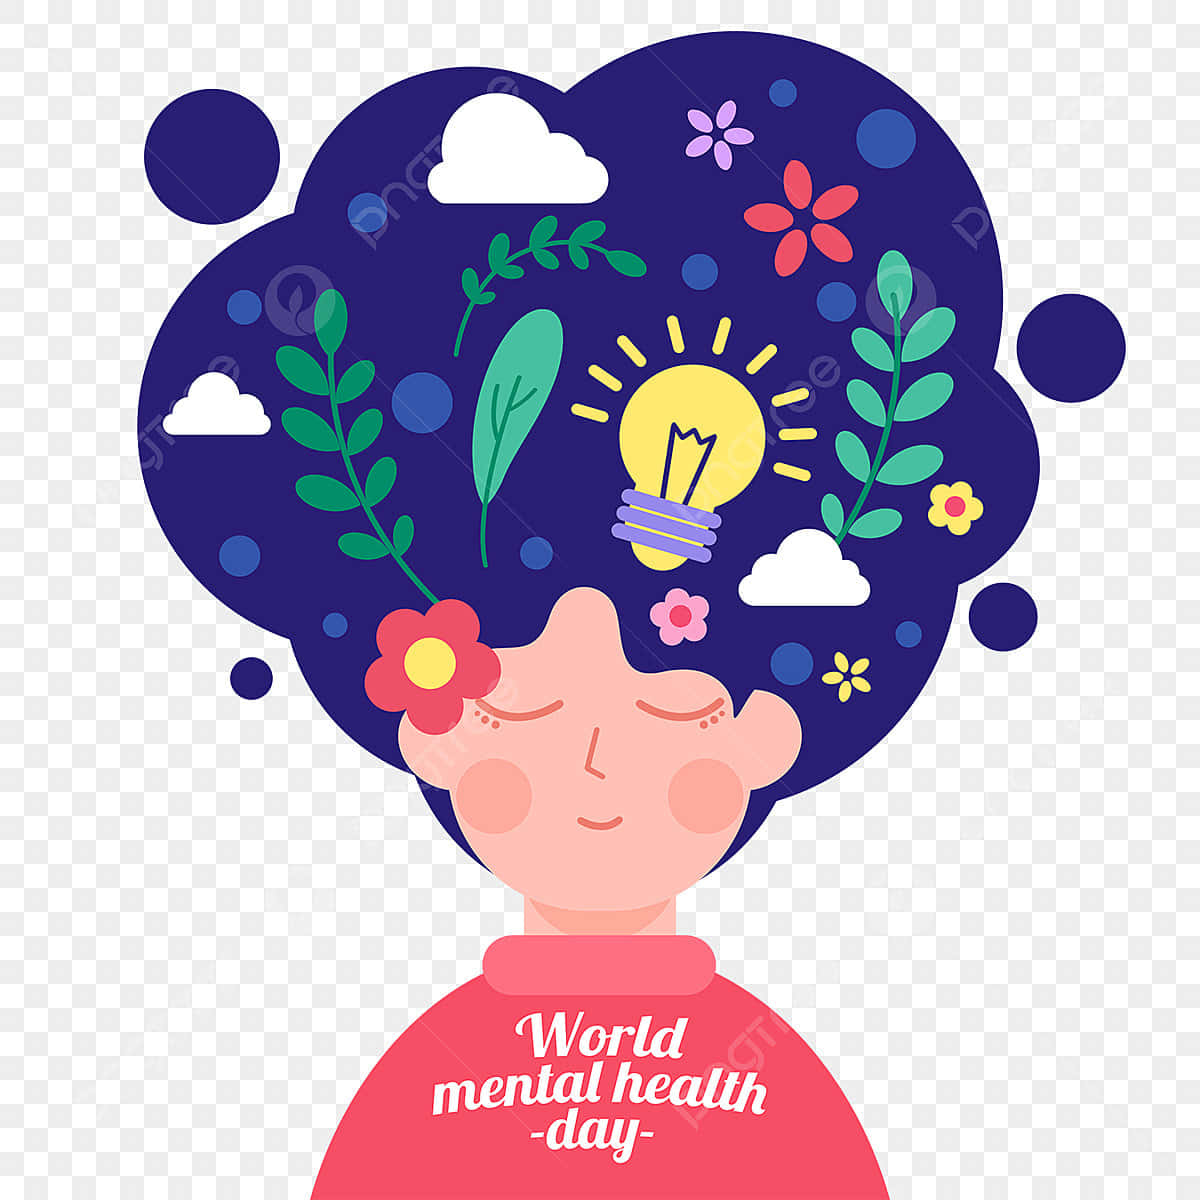 Díamundial De La Salud Mental, Día Mundial De La Salud Mental, Día Mundial De La Salud Mental, Día Mundial De La Salud Mental, Día Mundial De La Salud Mental, Día Mundial De La Salud Mental, Día Mundial De La Salud Mental